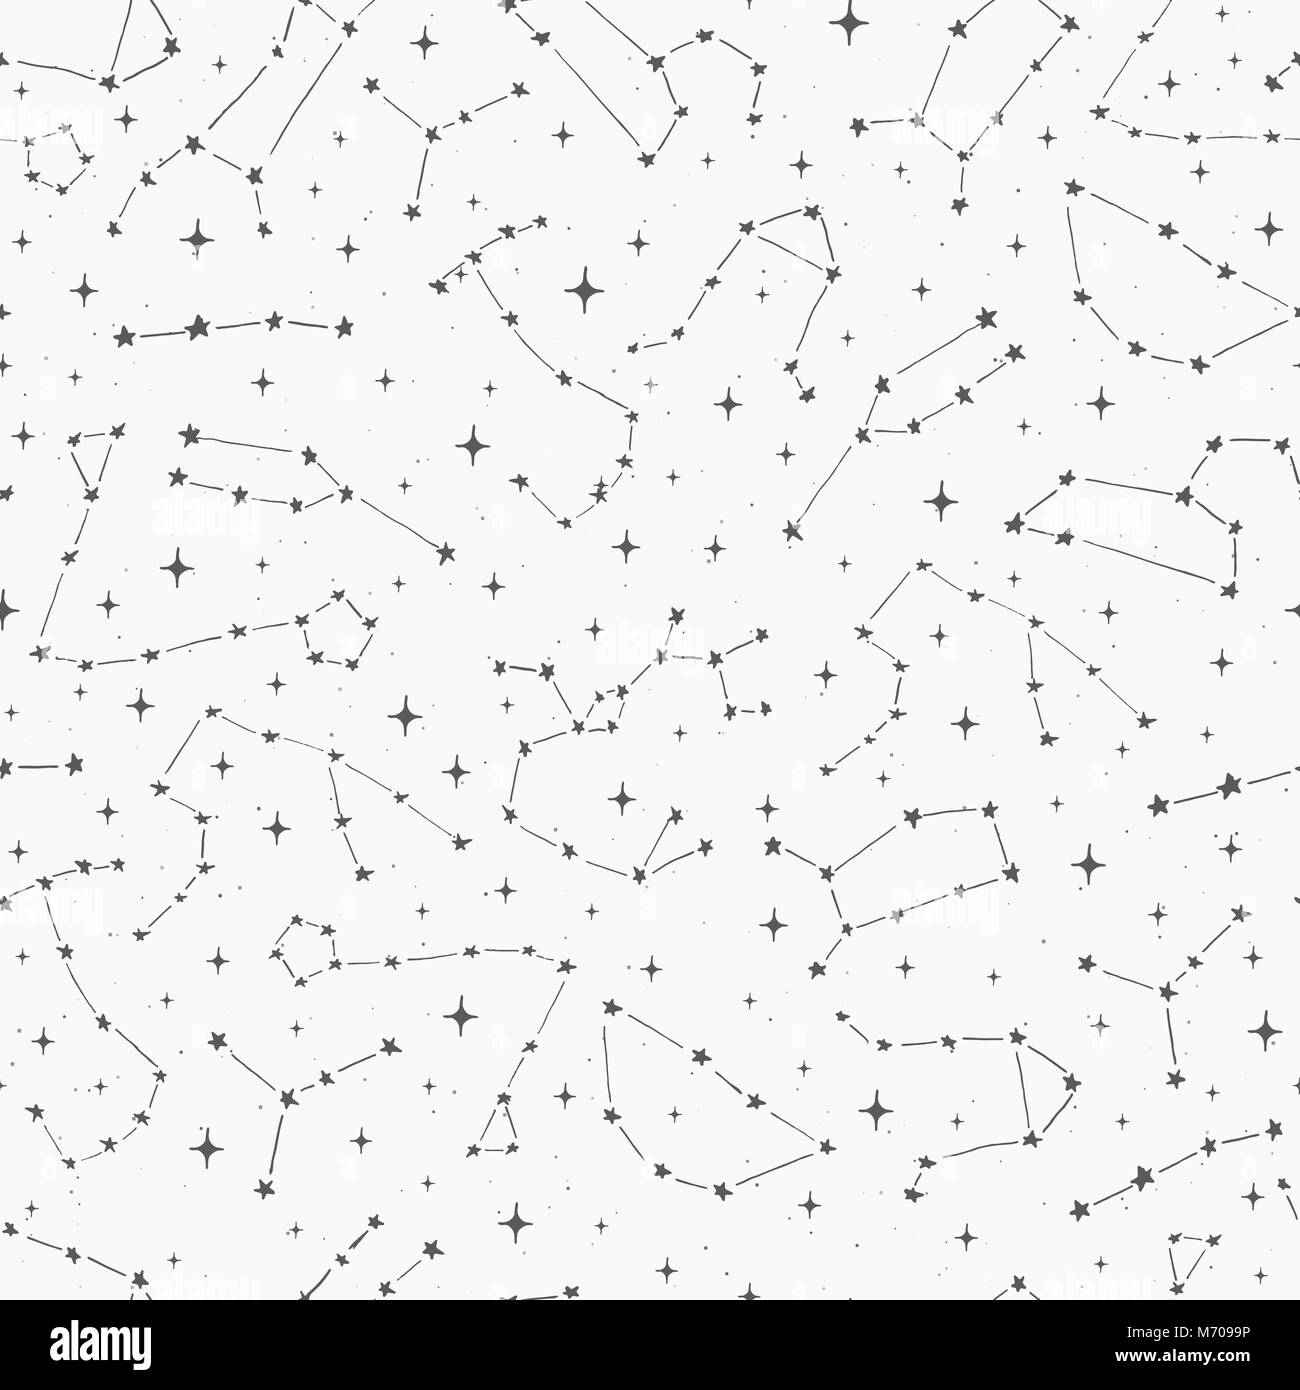 Hand drawn vector seamless pattern avec les constellations du zodiaque sur le fond étoilé. En toile de fond de l'espace style croquis. Illustration de Vecteur